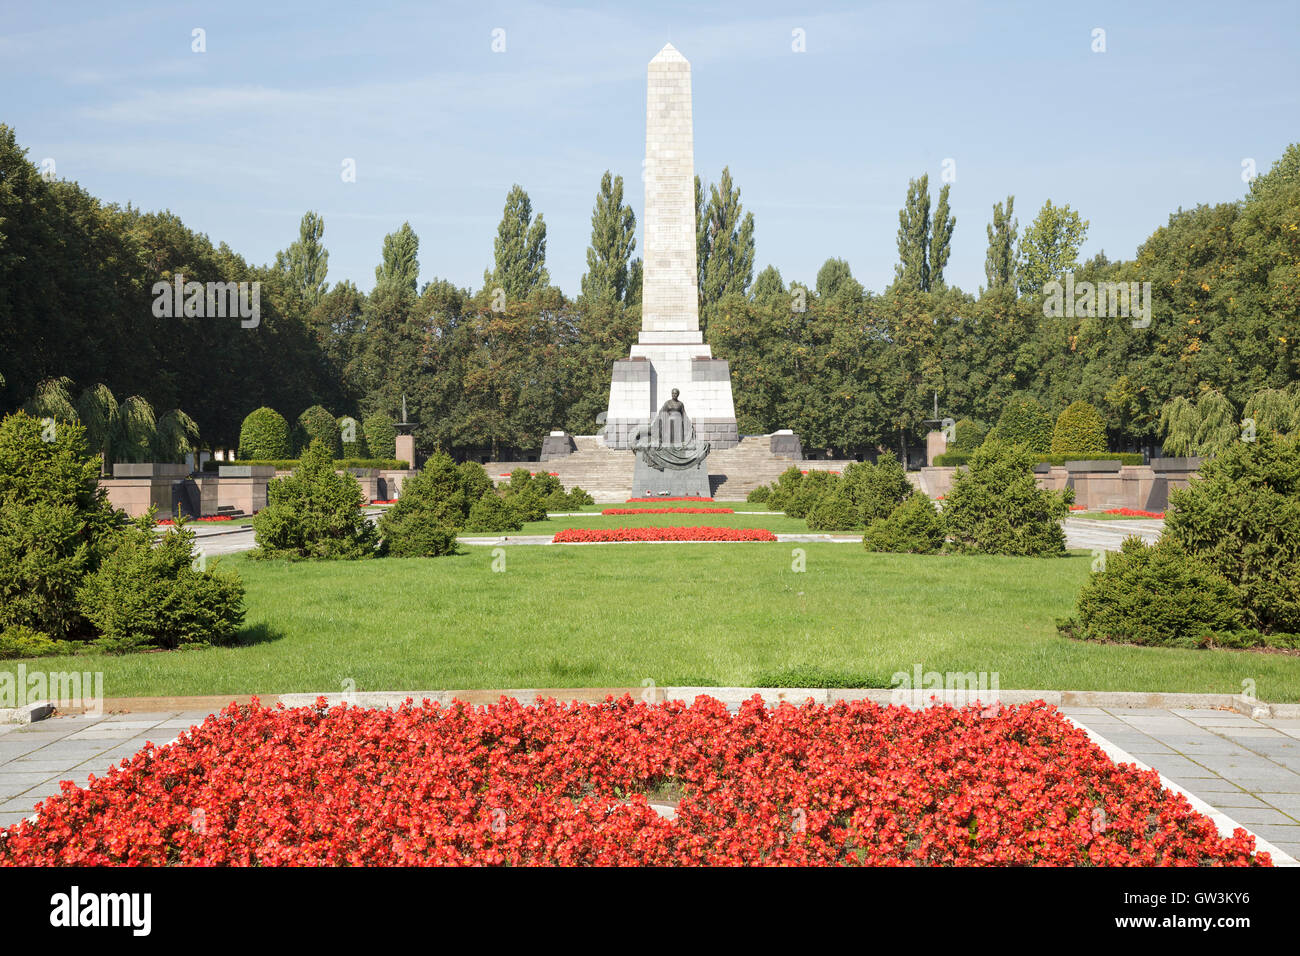 Monument commémoratif de guerre soviétique, Schönholzer Heide, Pankow, Berlin, Allemagne Banque D'Images